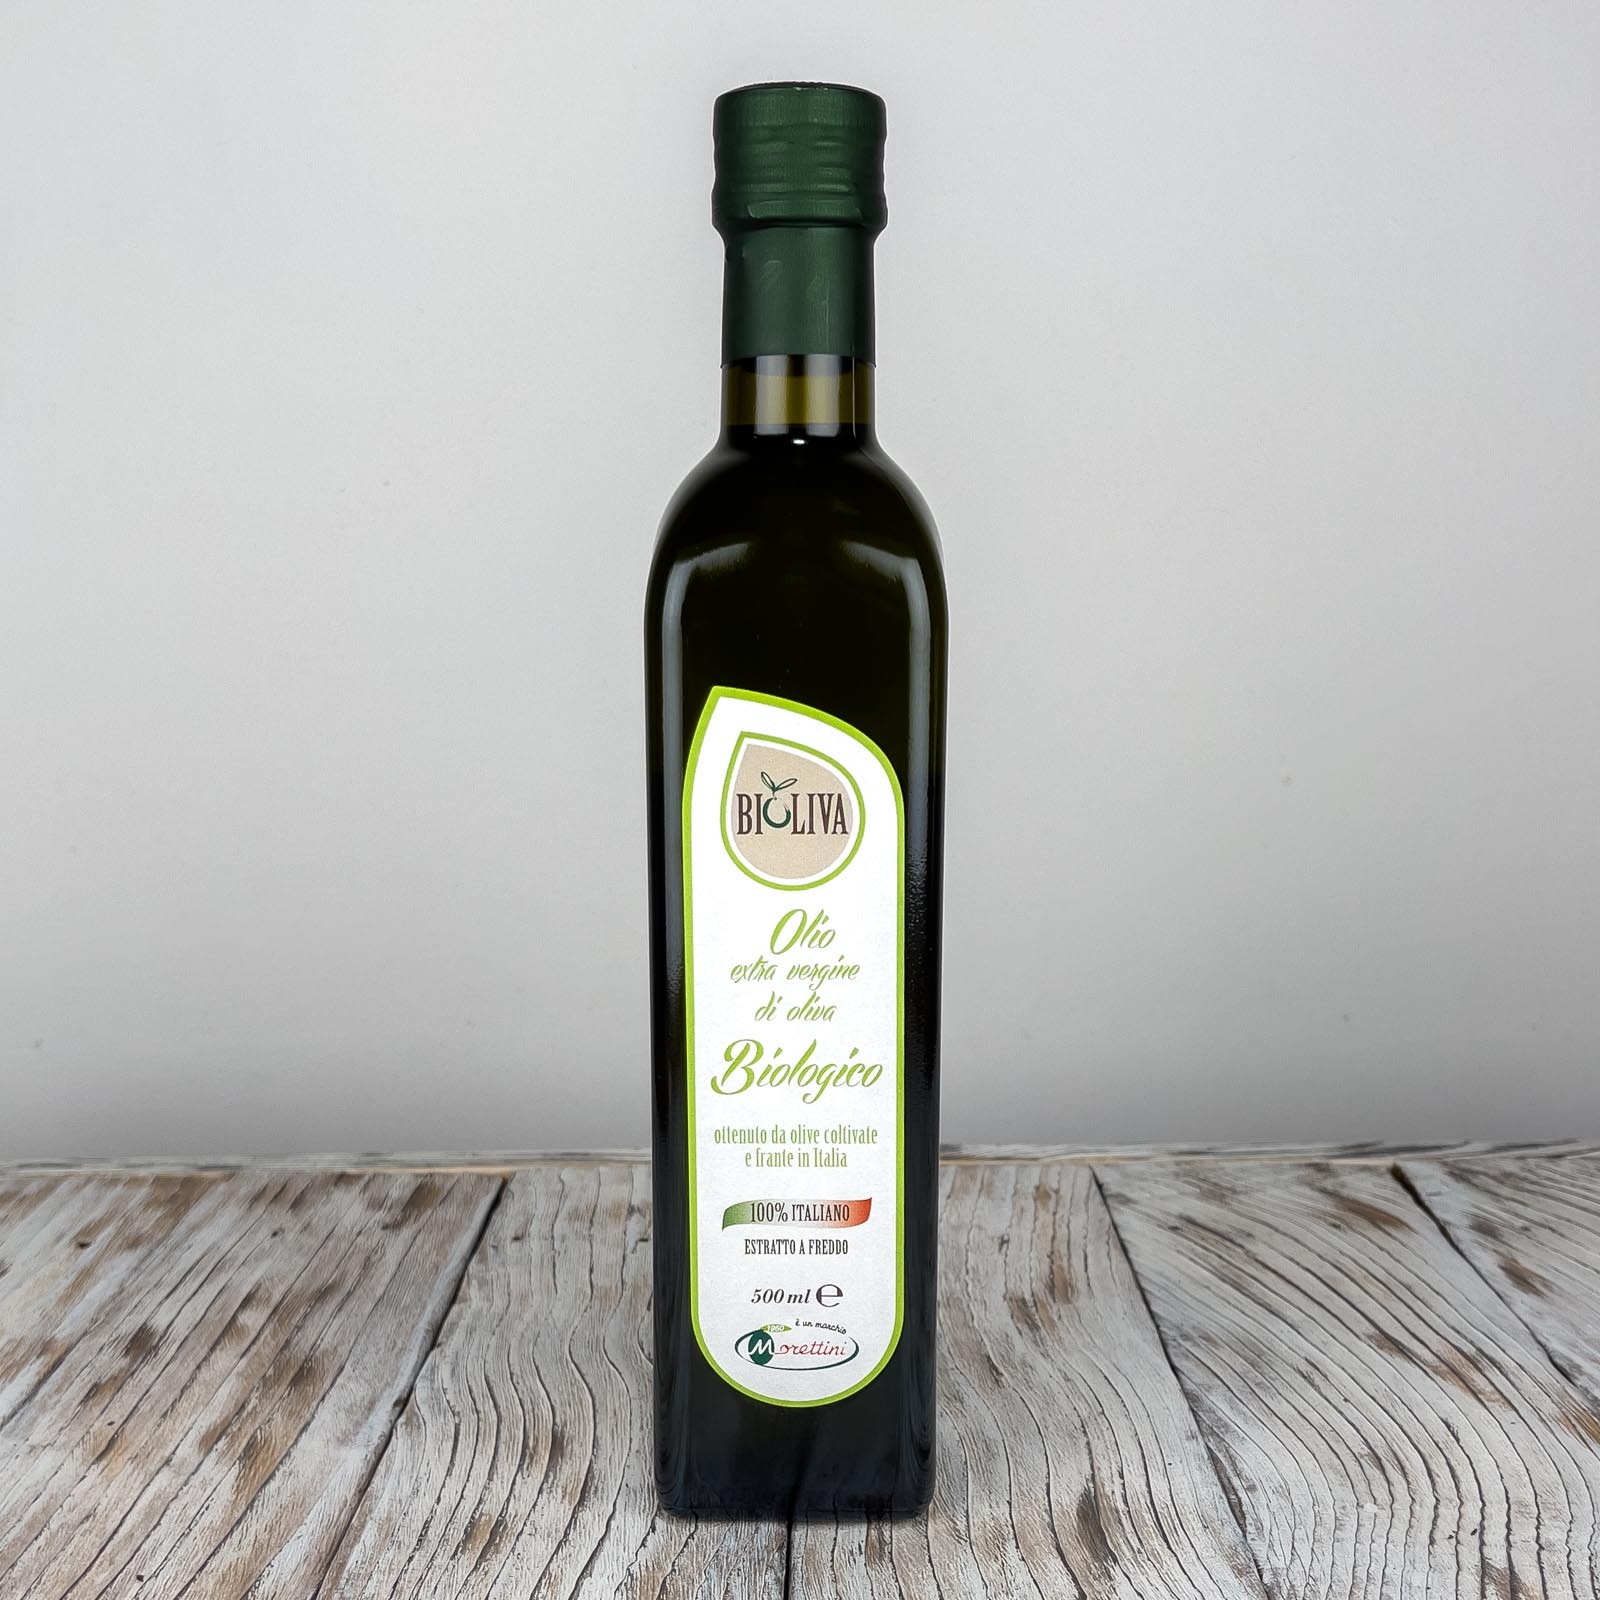 „Bioliva”, 100% italienisches Bio-Olivenöl extra vergine von höchster Qualität, direkt aus Oliven und ausschließlich auf mechanischem Wege gewonnen - Produktionsjahr 2021/2022.